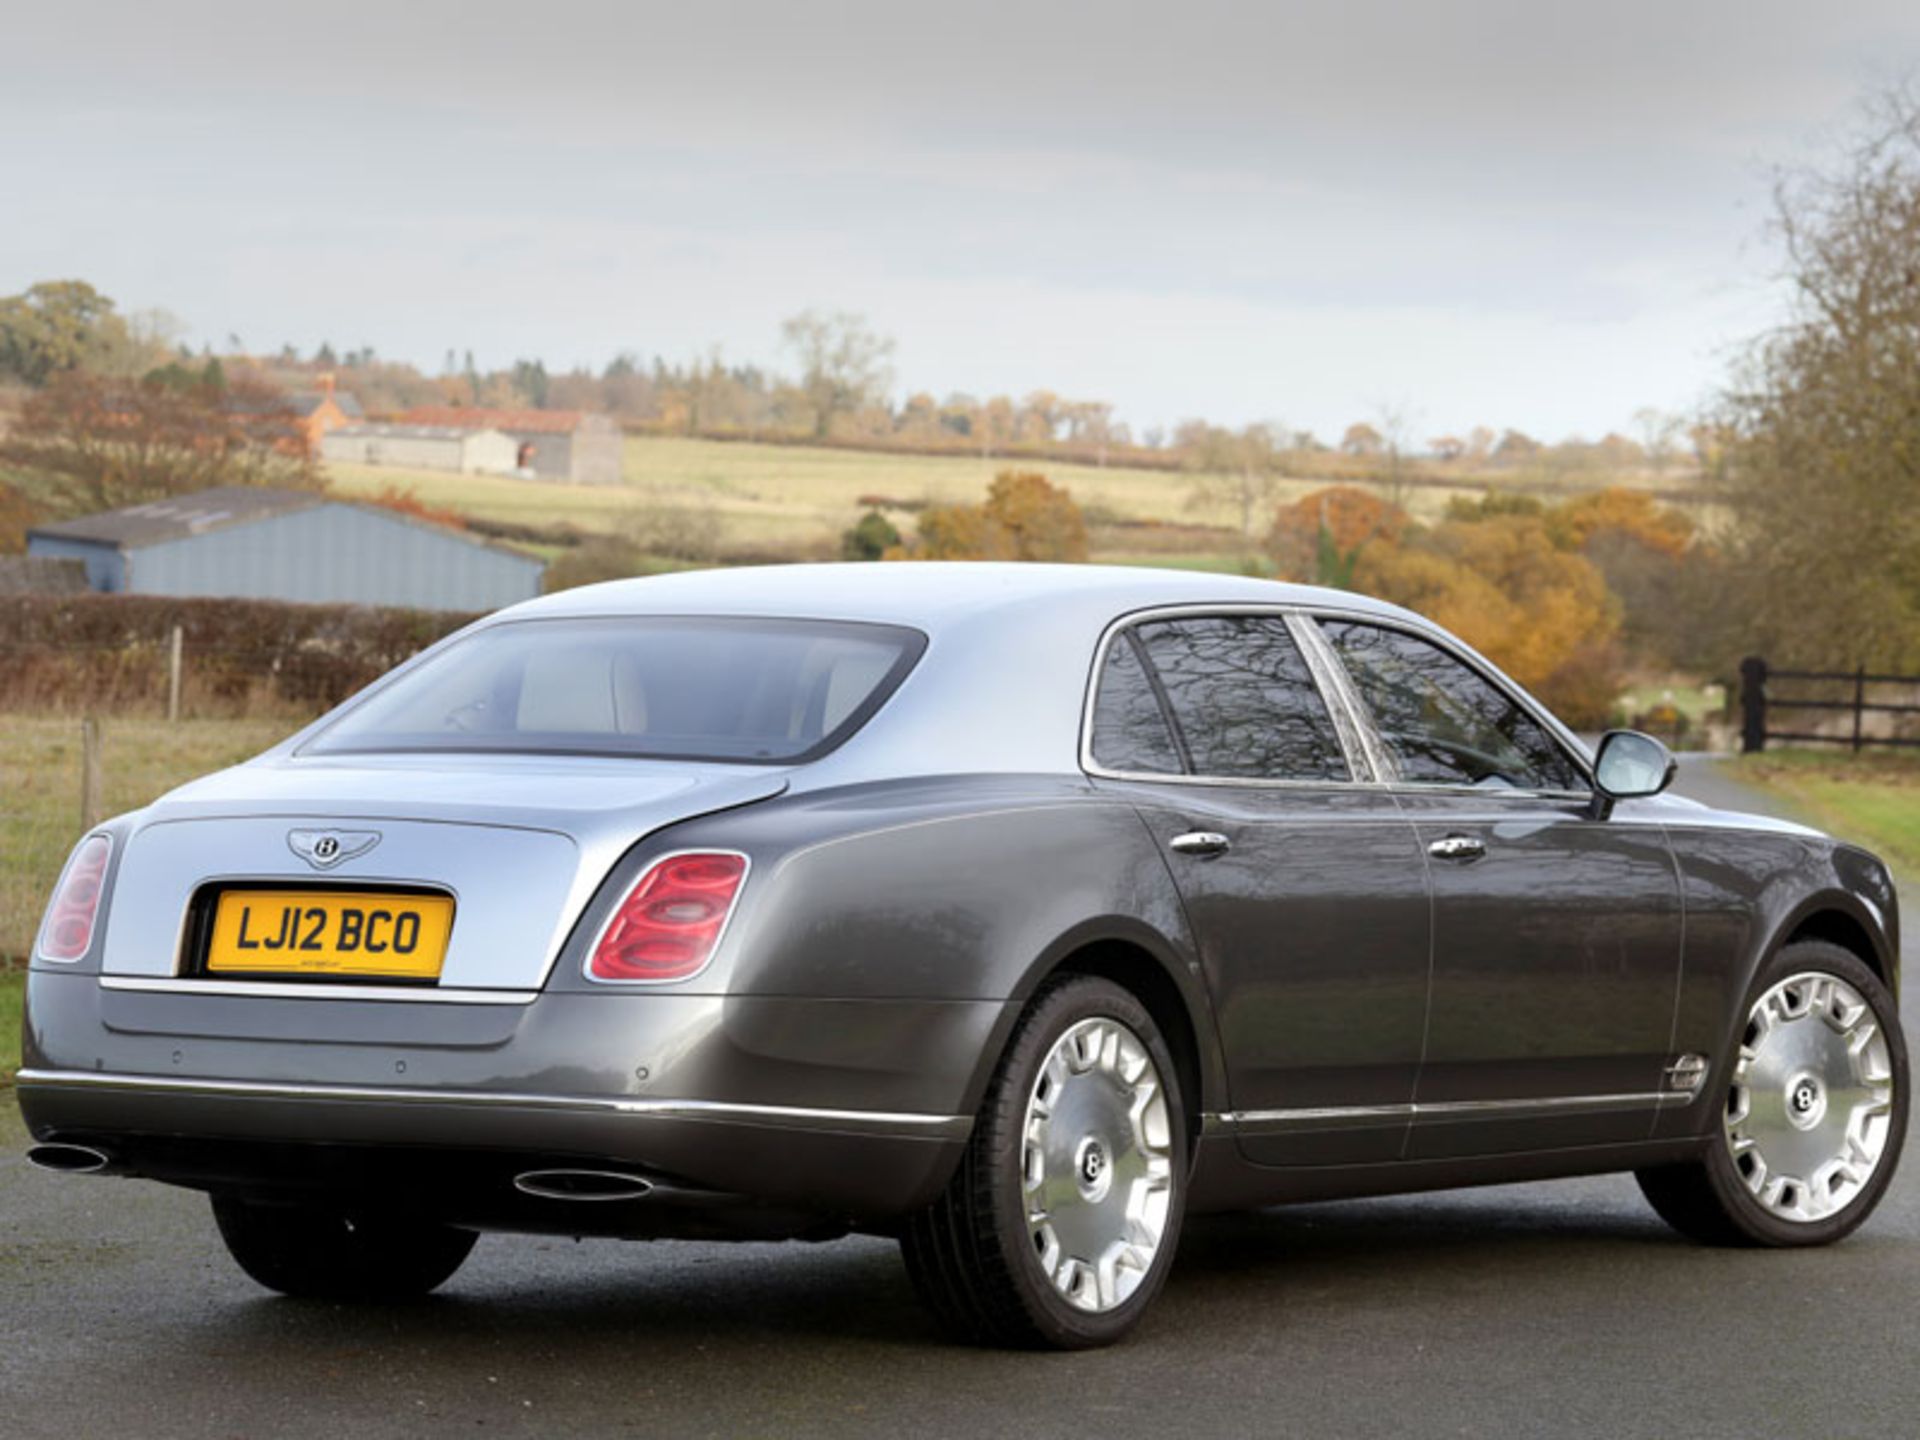 2012 Bentley Mulsanne - Image 4 of 10